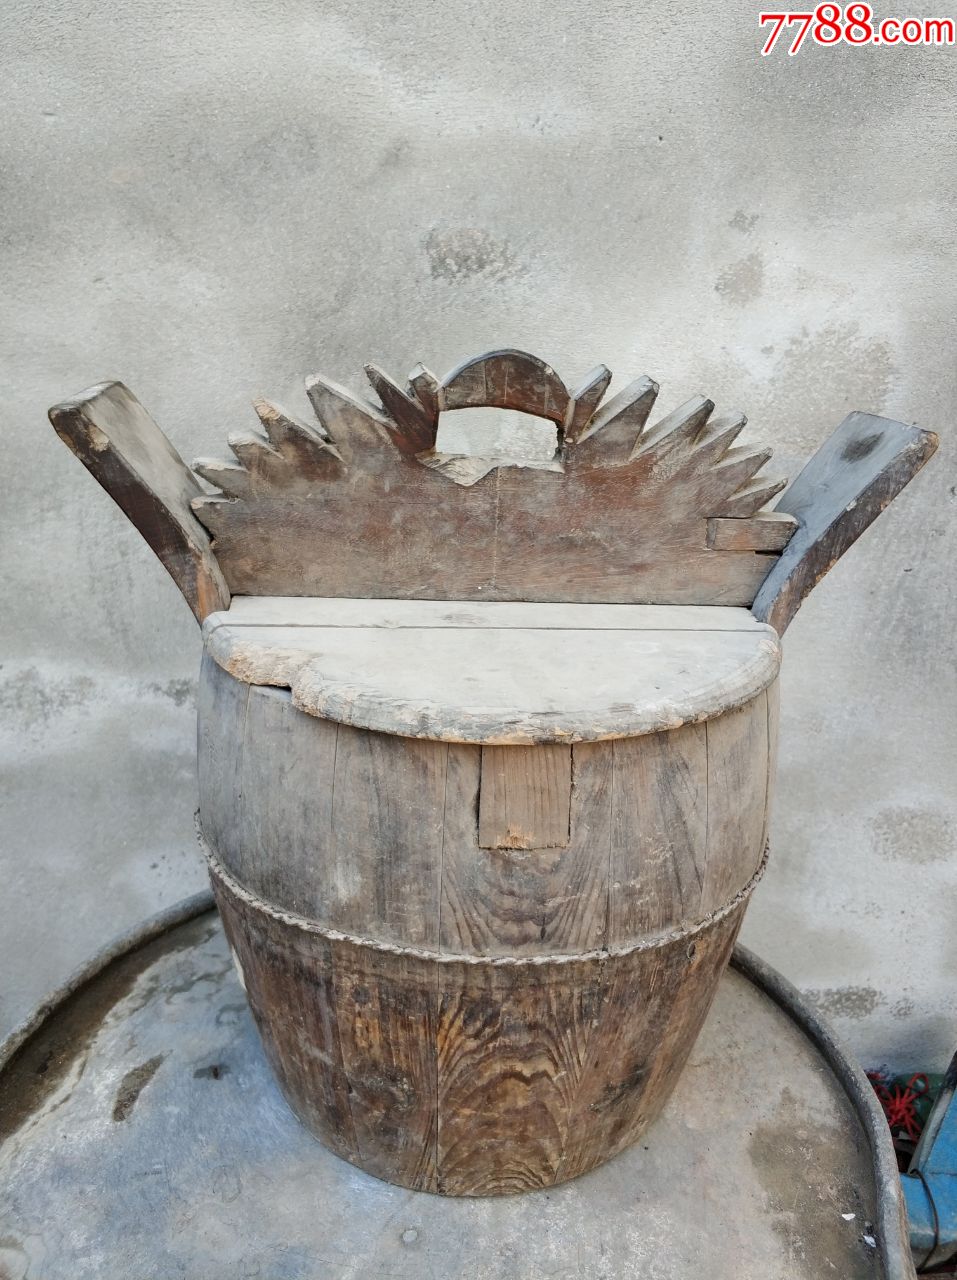 高45厘米直径20厘米是蒸饭用的桶不能装水